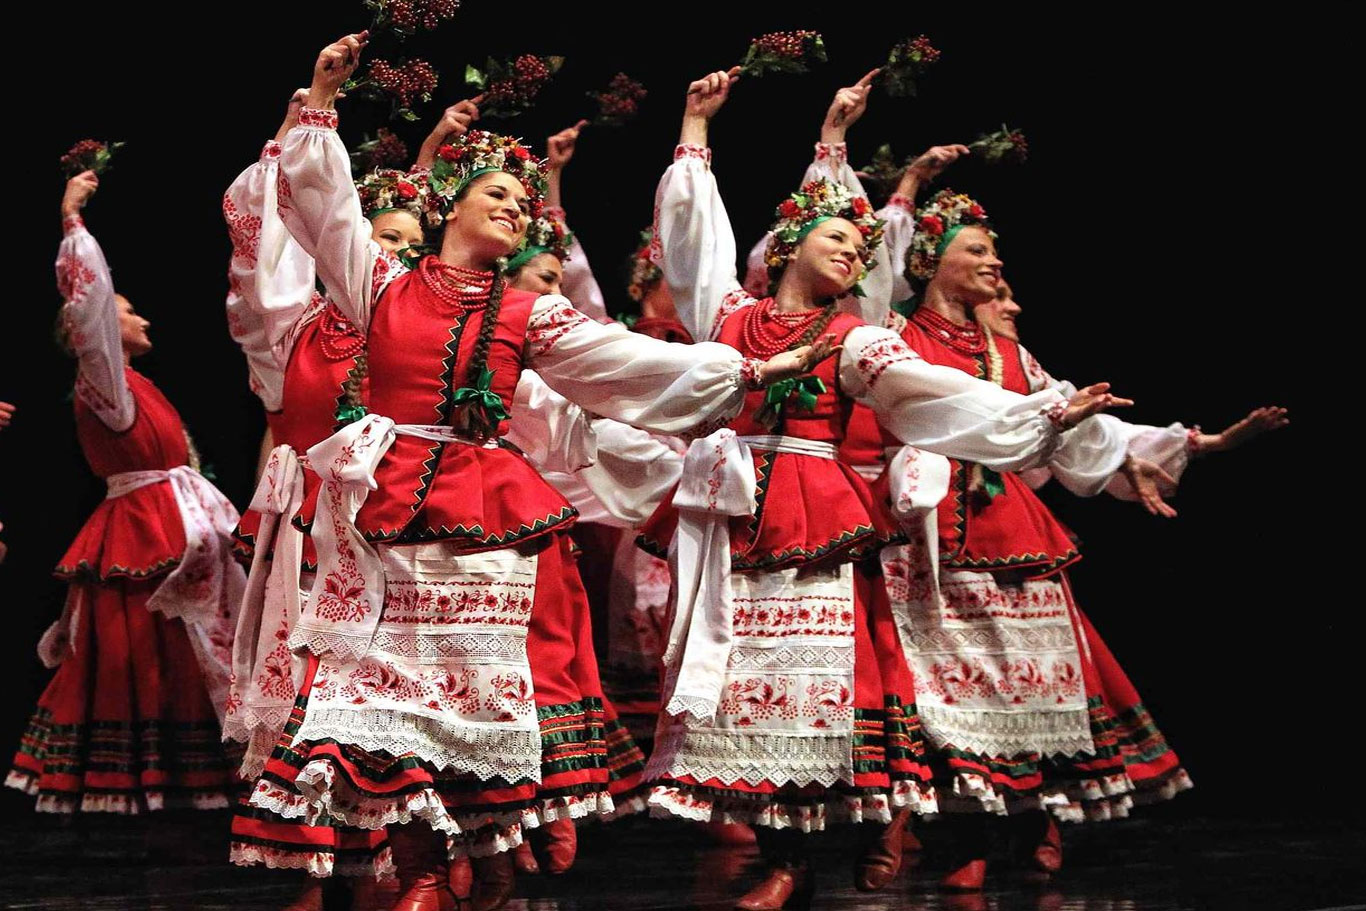 Ukrainian Dance Troupe